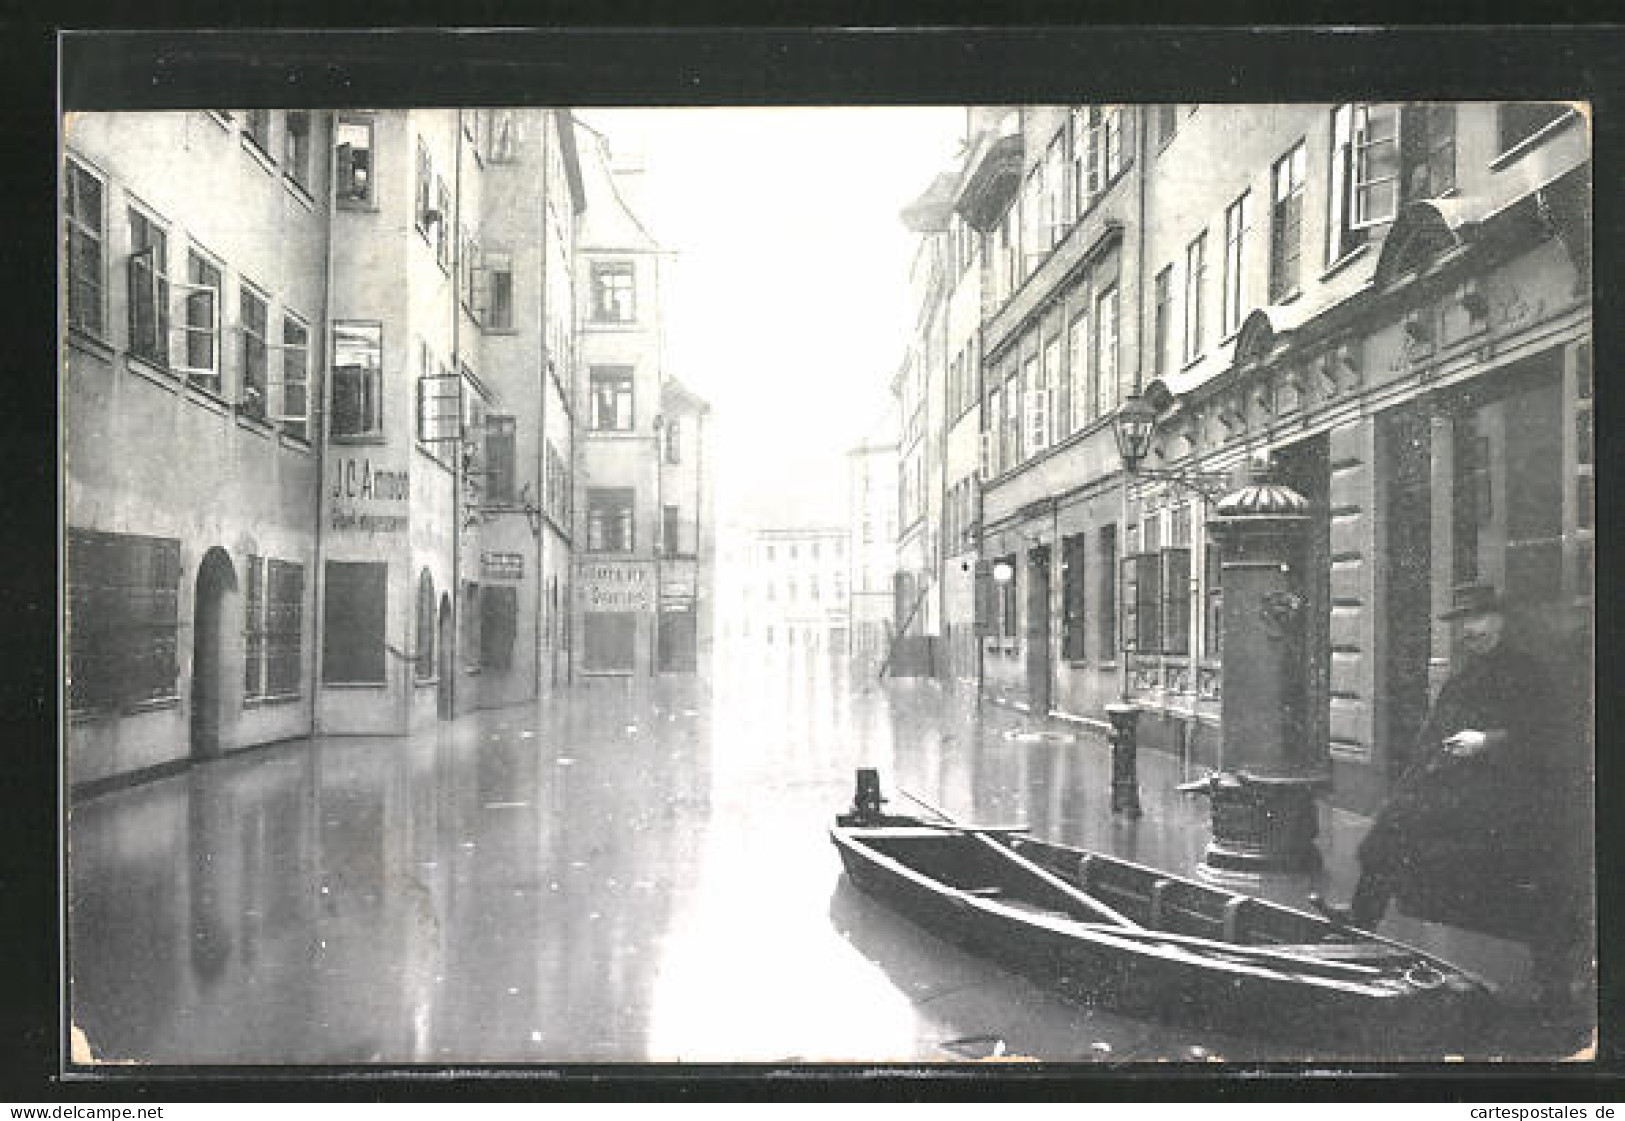 AK Hochwasser Nürnberg Am 05. Februar 1909, Ein Boot In Der Tucherstrasse  - Inondations